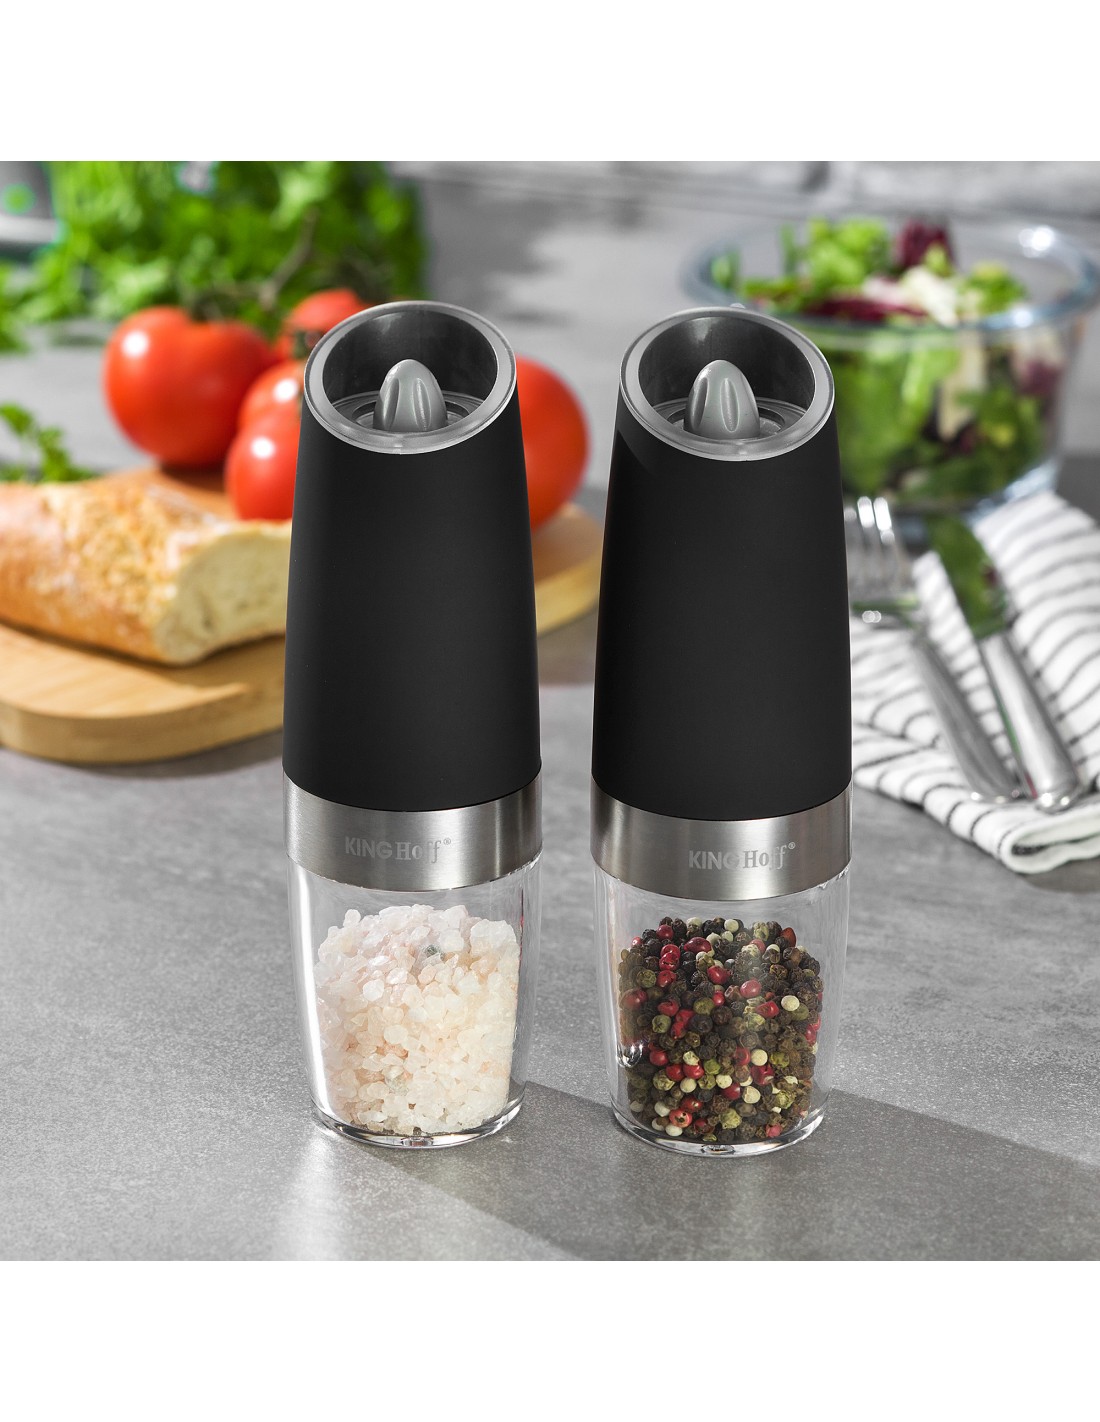  Gravity Electric Pepper and Salt Grinder Set